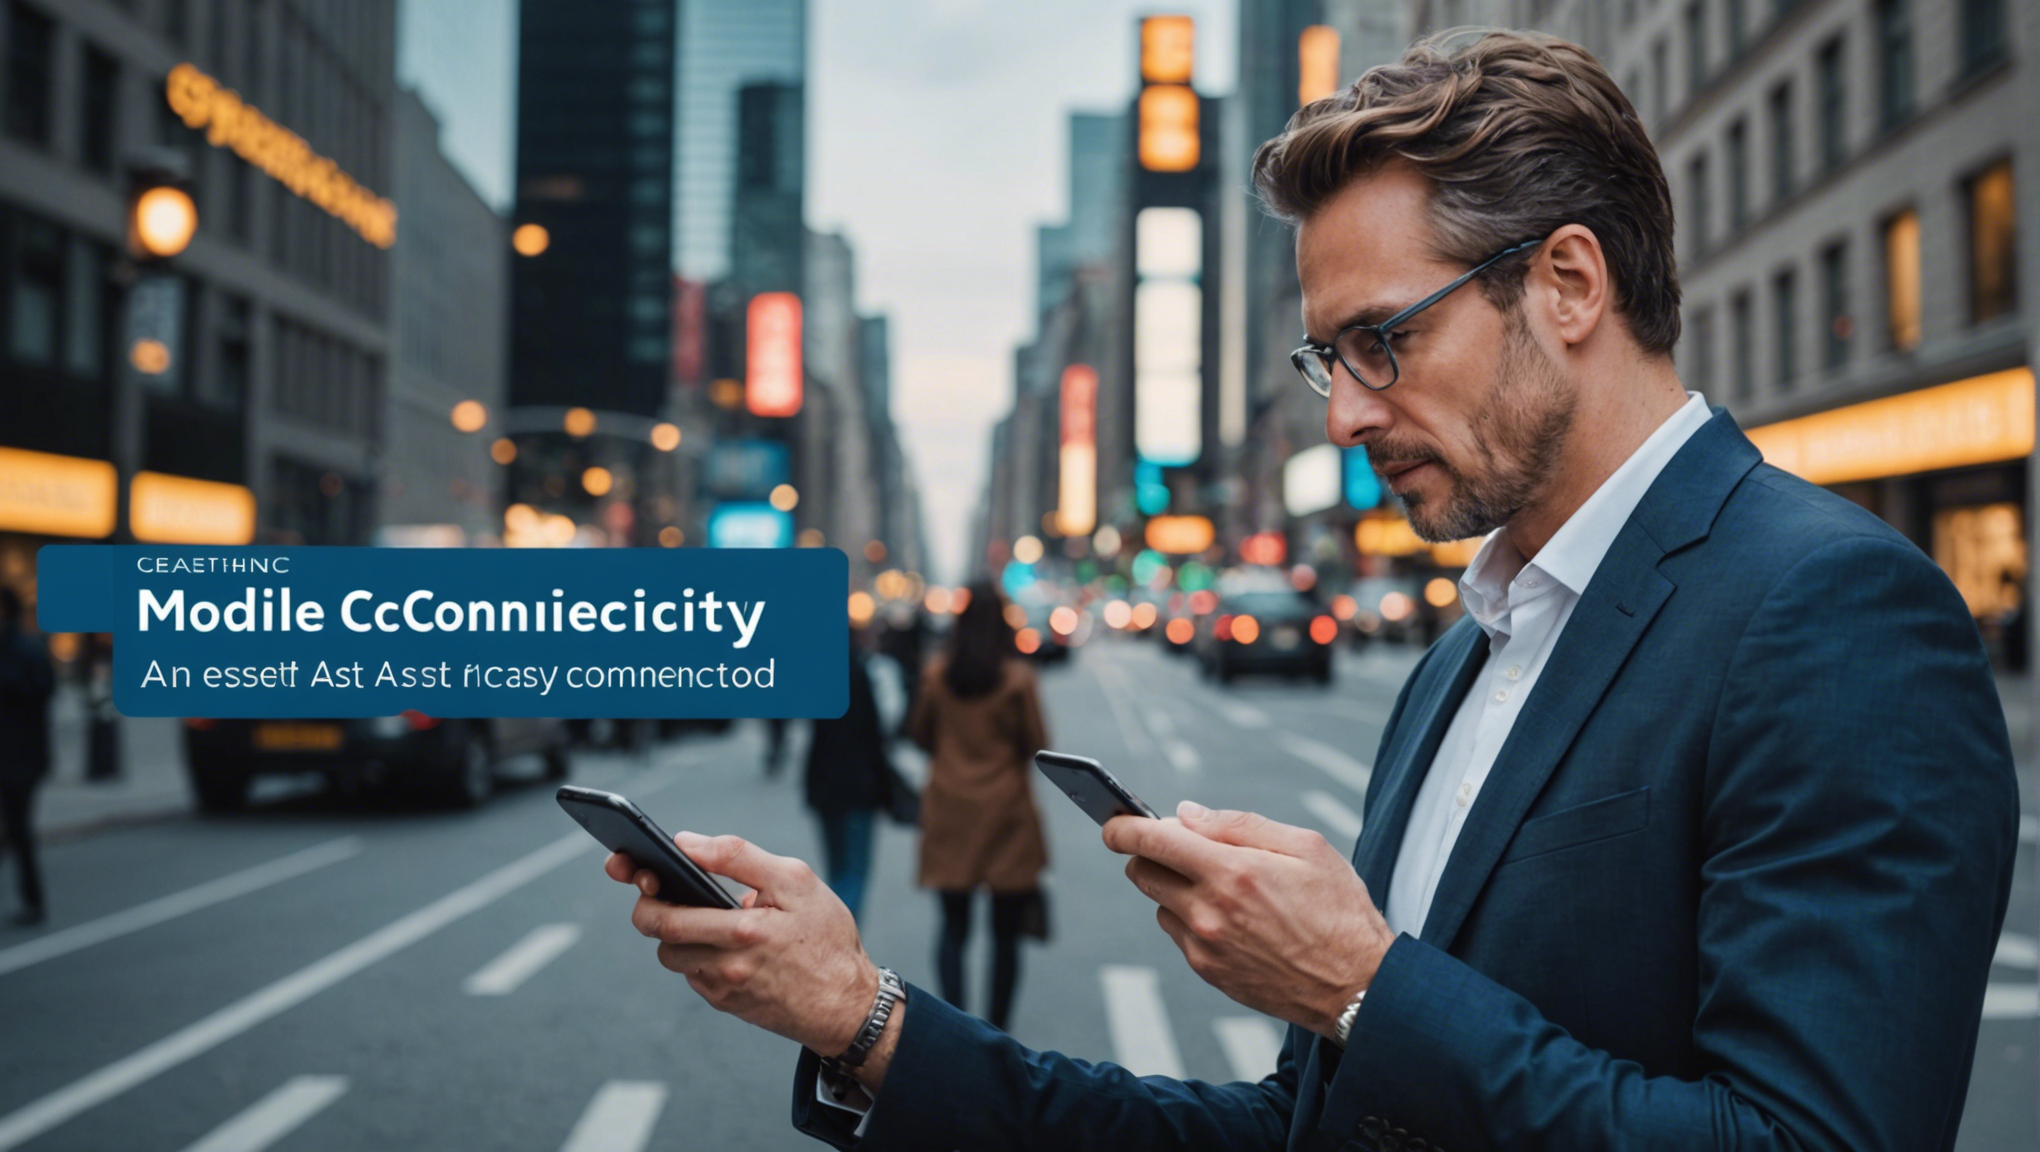 la connectivité mobile est un atout essentiel pour rester connecté en tout temps. découvrez comment la technologie mobile facilite la communication et l'accès à l'information.